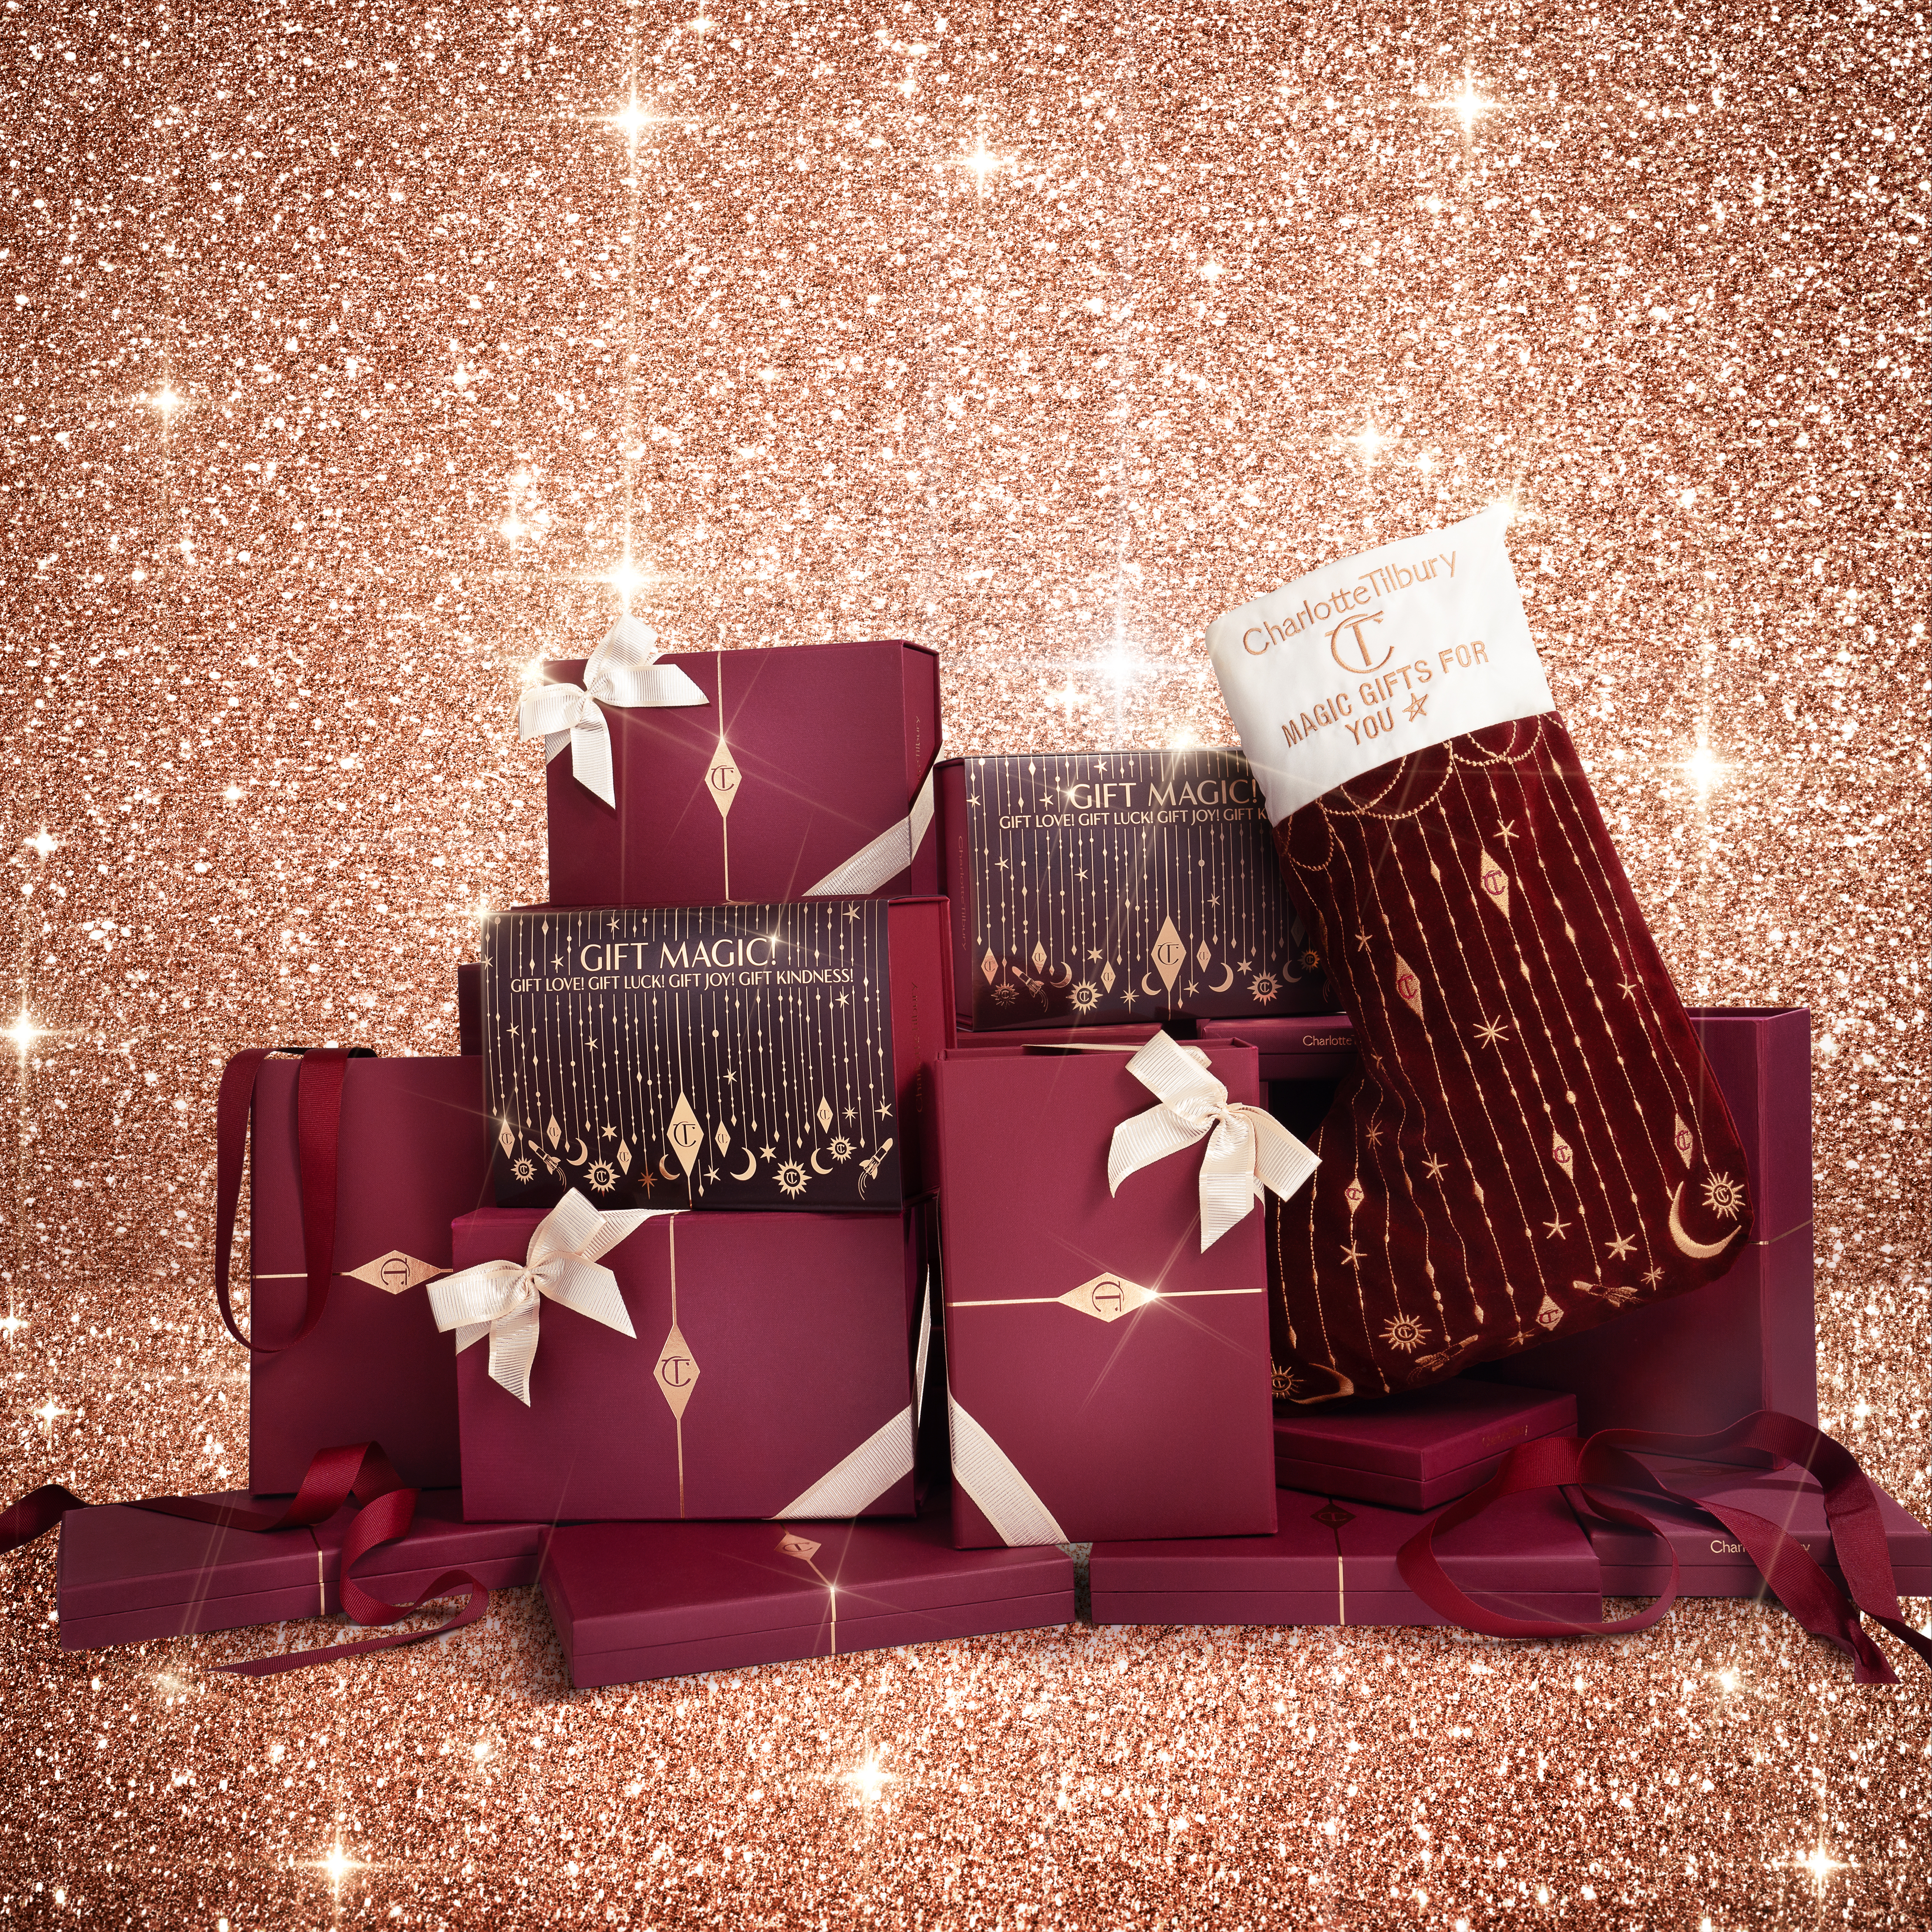 Ein großer Stapel kastanienbrauner und goldener Geschenkschachteln mit cremefarbenen Bändern, dazu verzierte Weihnachtsstrümpfe.